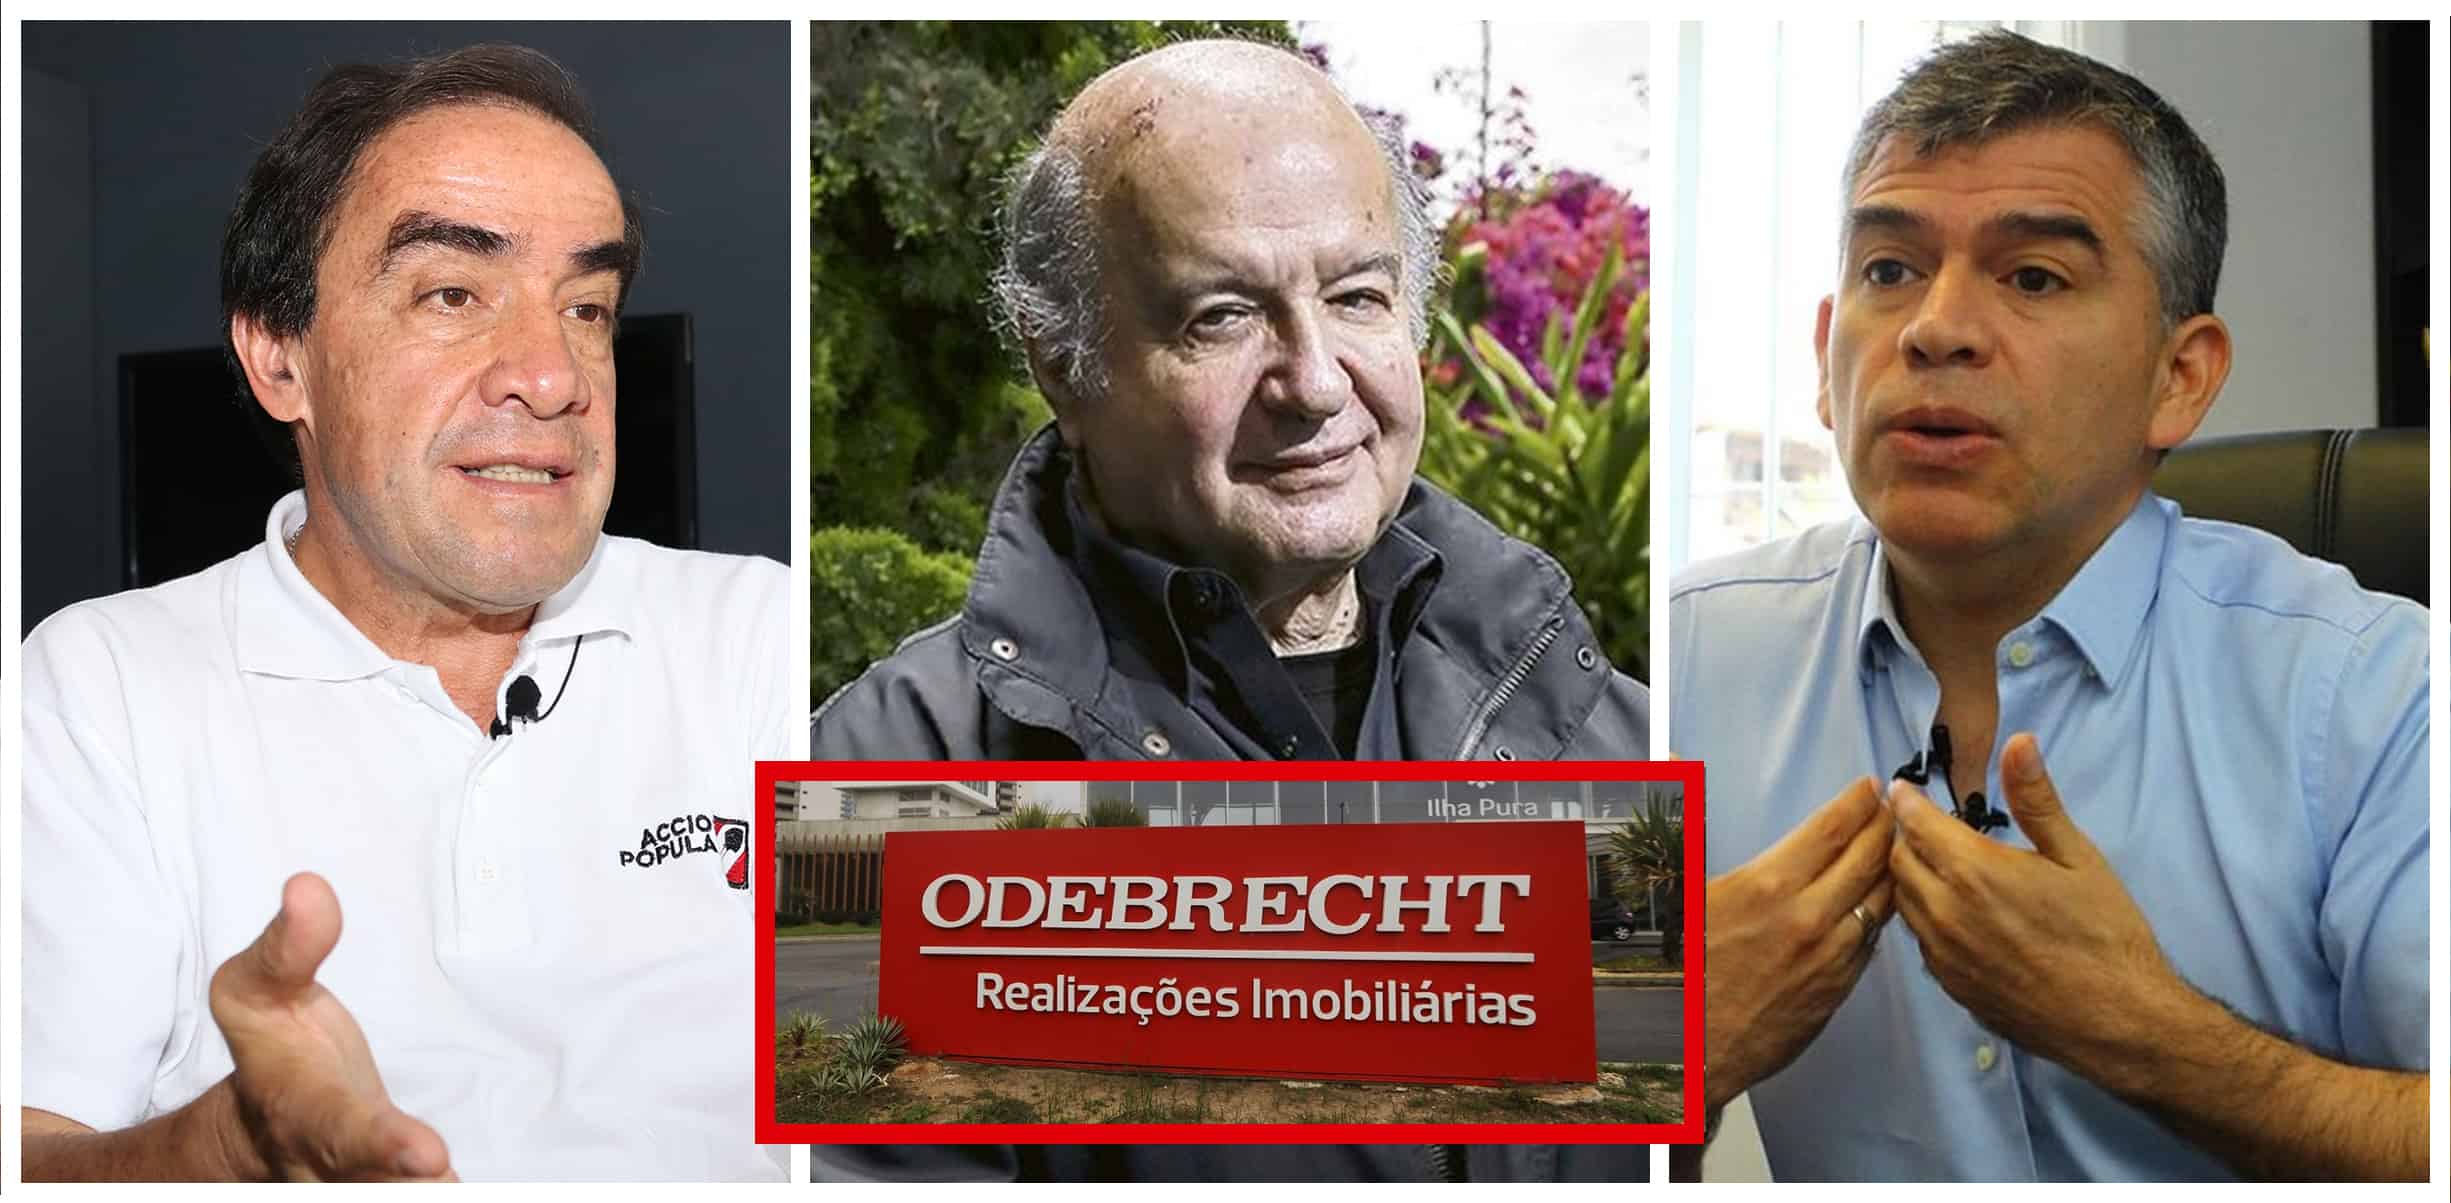 “Empresa corrupta Odebrecht se ha infiltrado en la campaña electoral”